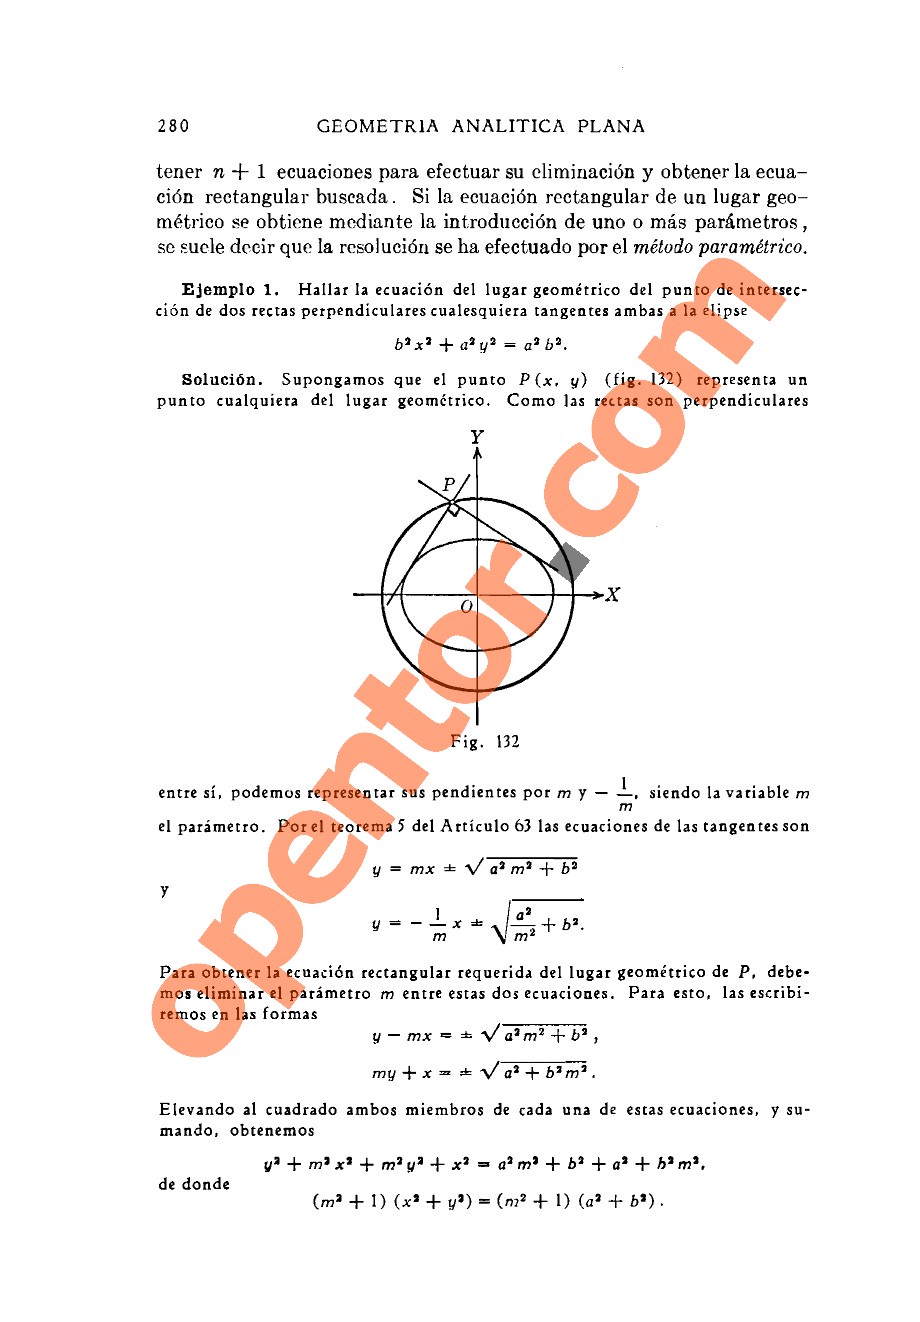 Geometría Analítica de Lehmann - Página 280